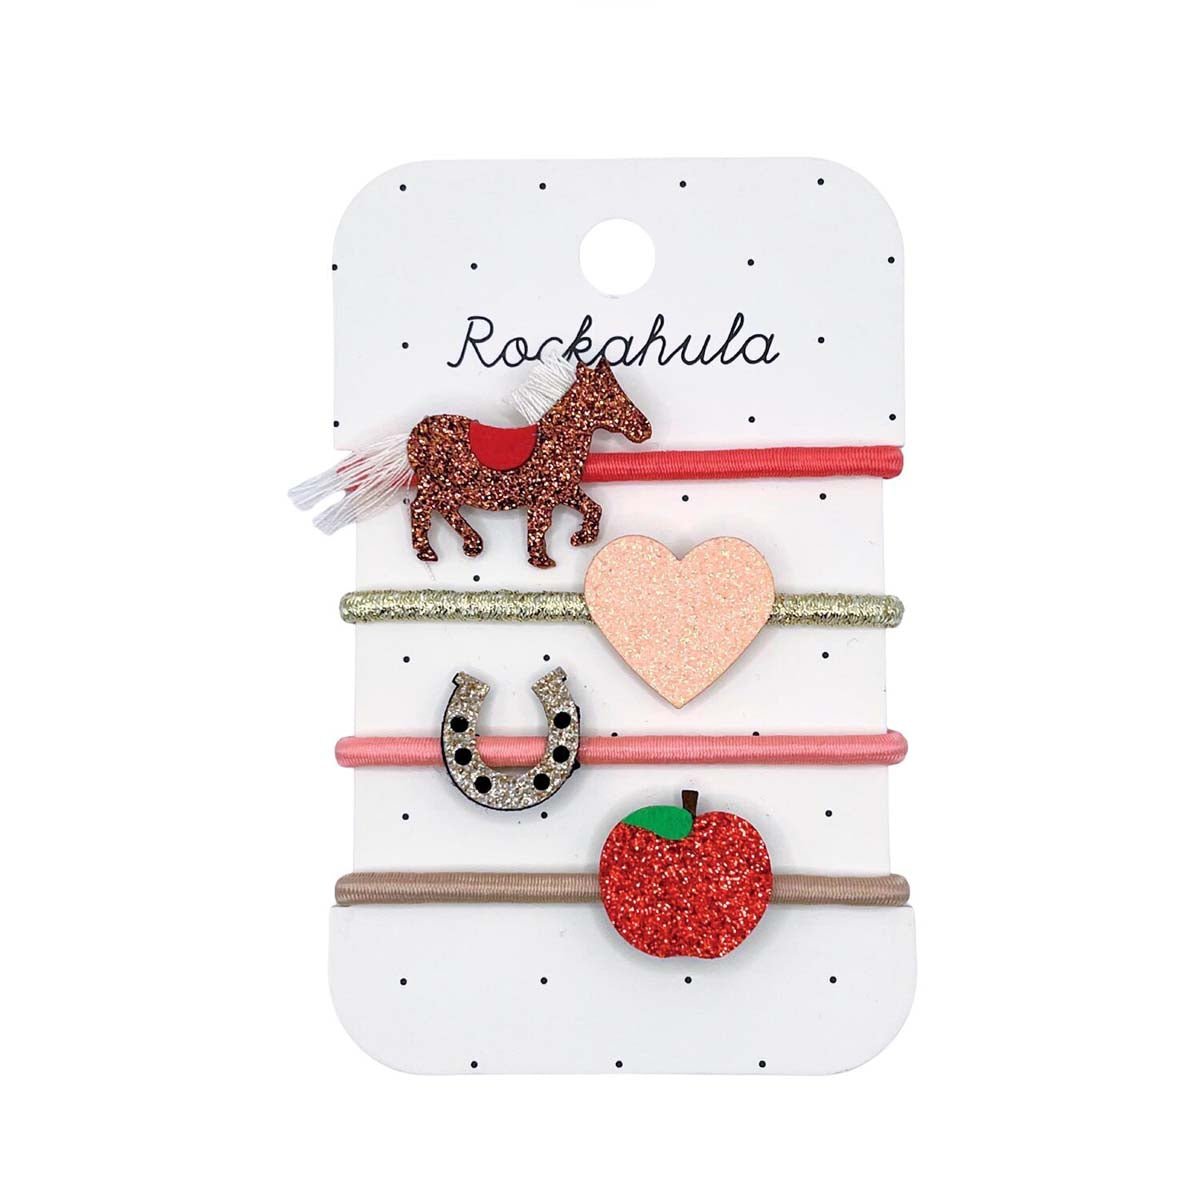 Cuteness overload met Rockahula’s lucky pony elastiekjes! De set bestaat uit 4 elastieken in verschillende kleuren en versieringen: paard, hart, hoefijzer en appel met glitters. Voor echte paardenliefhebbers! VanZus